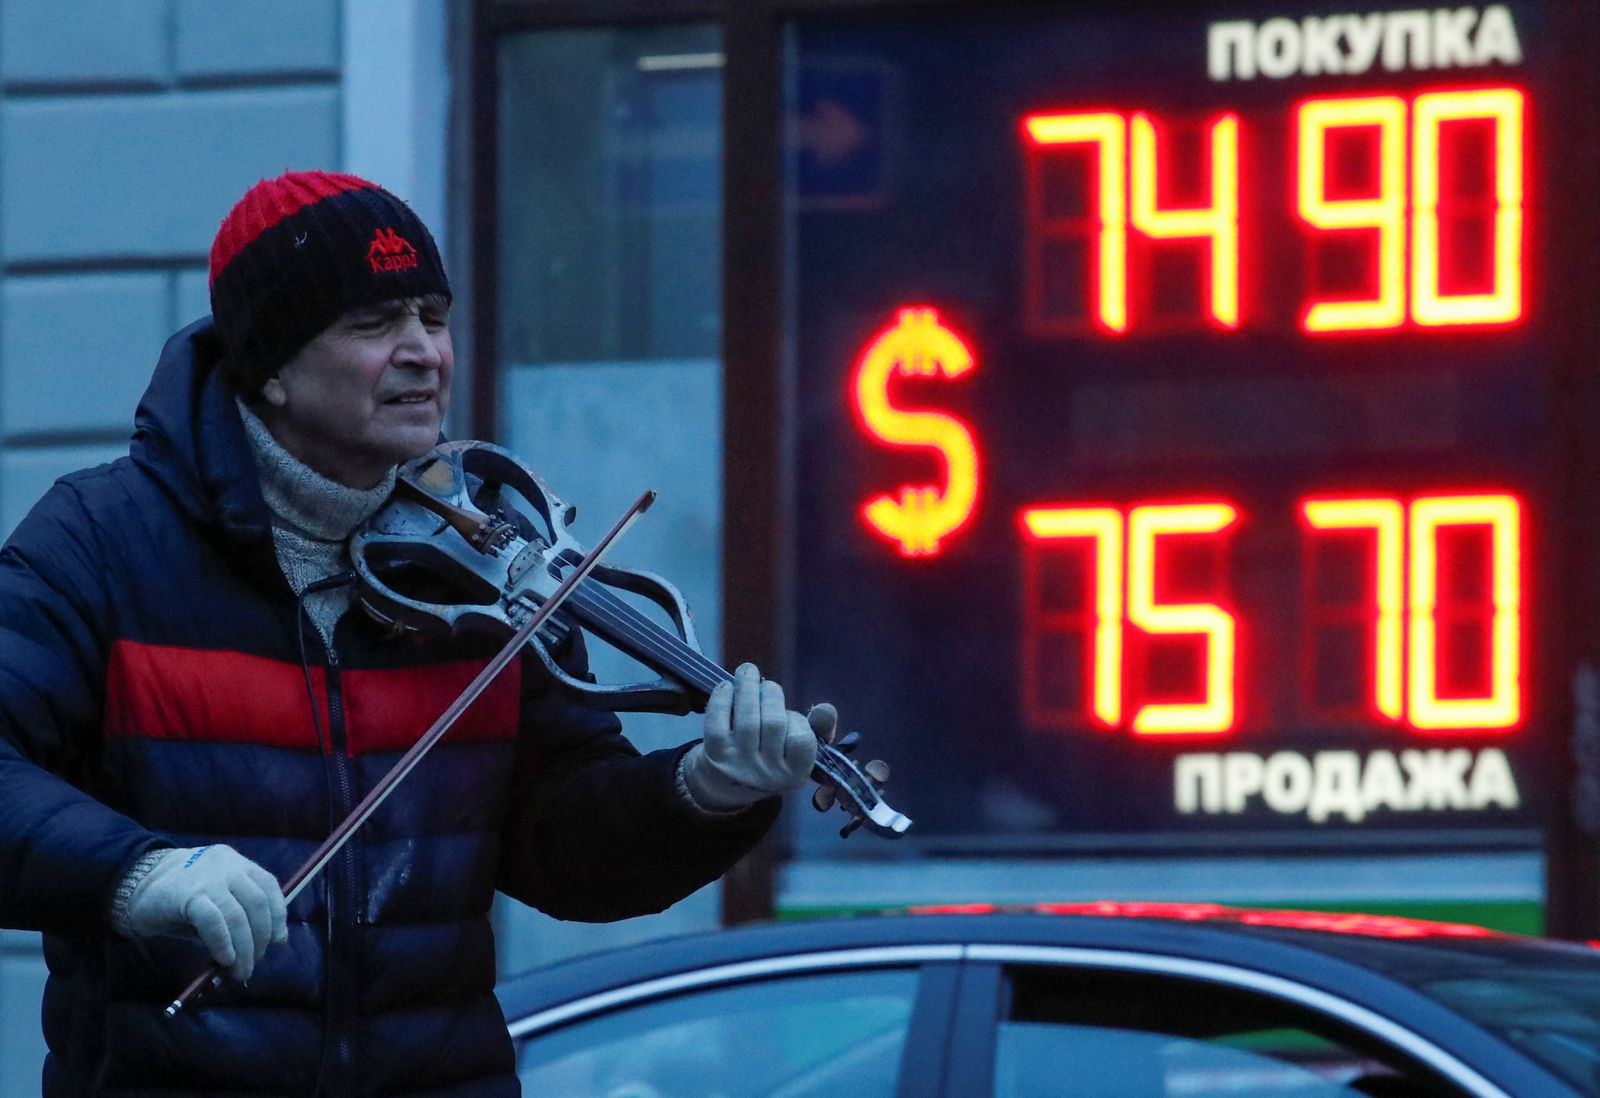 يعزف على الكمان قرب لوحة تعرض سعر صرف الدولار في مقابل الروبل الروسي بسان بطرسبرج - 16 فبراير 2022 - REUTERS